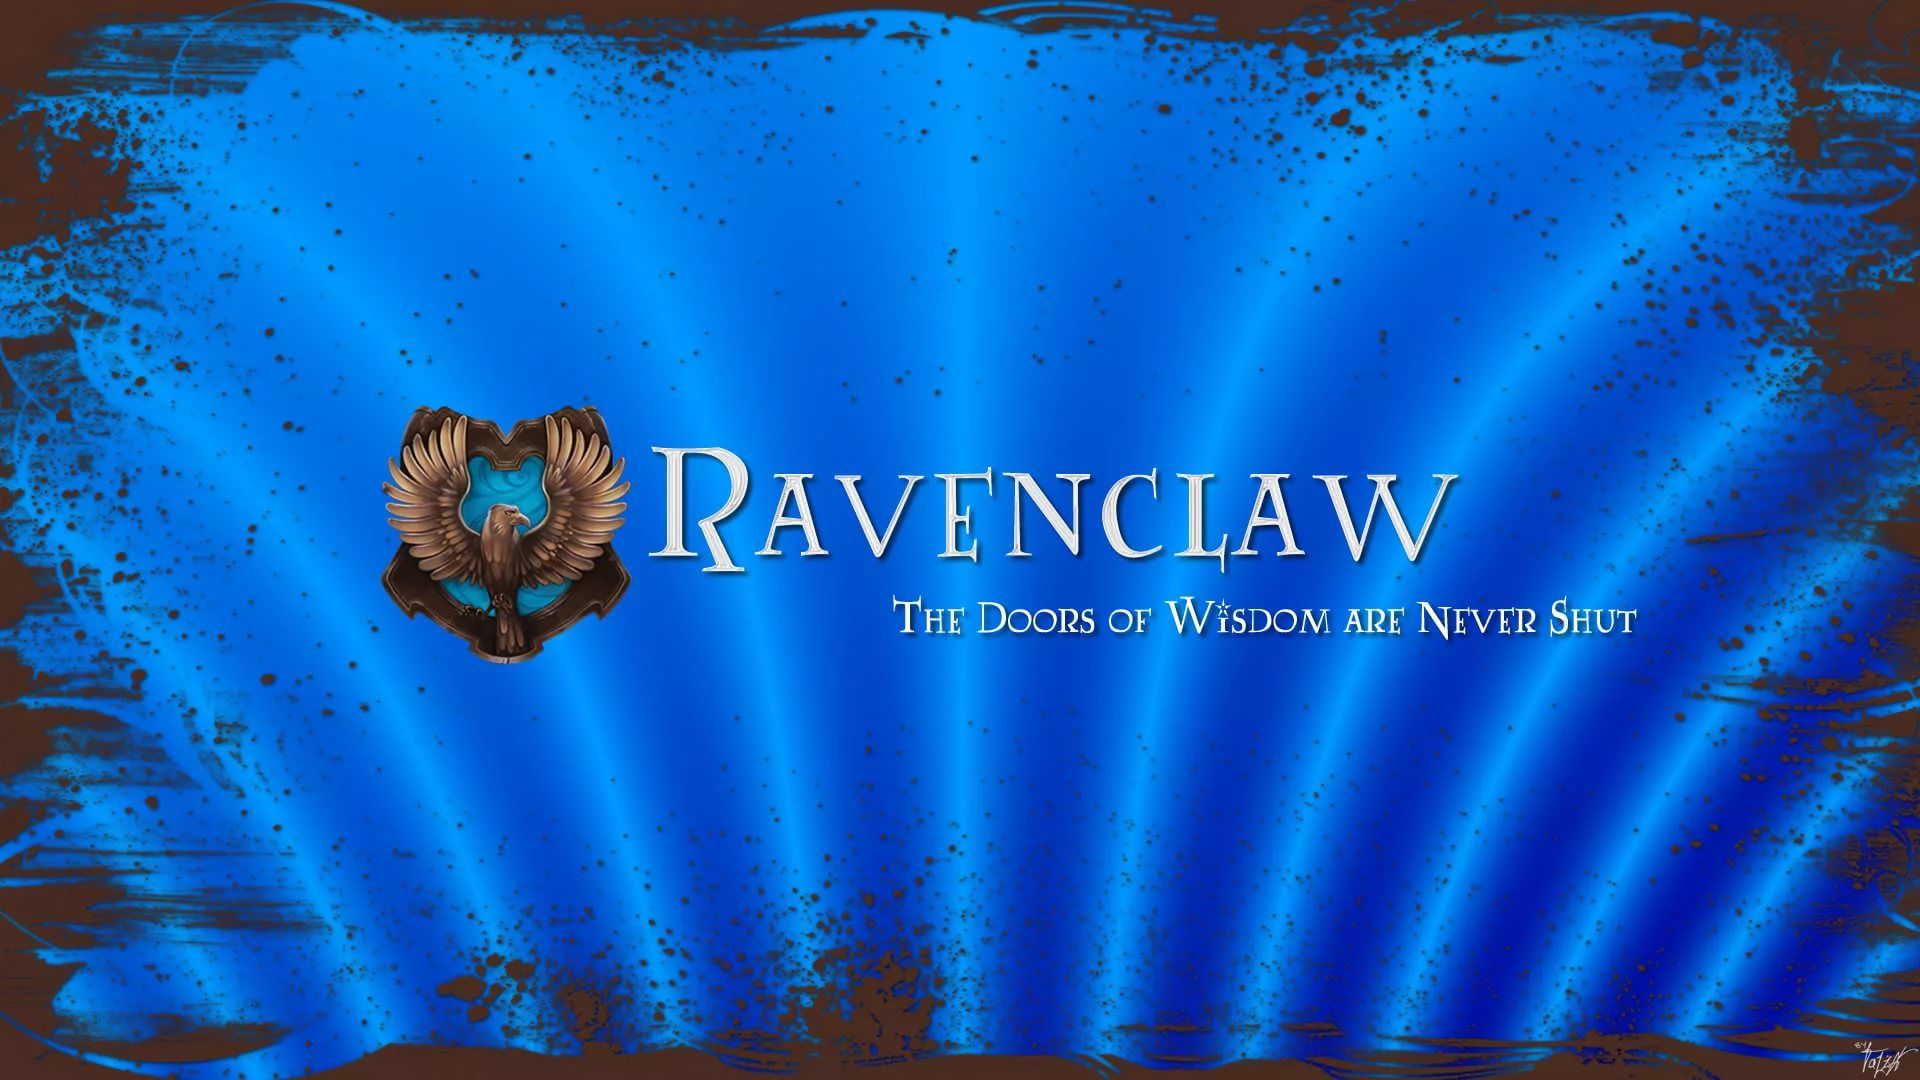 Ravenclaw Desktop Wallpaper